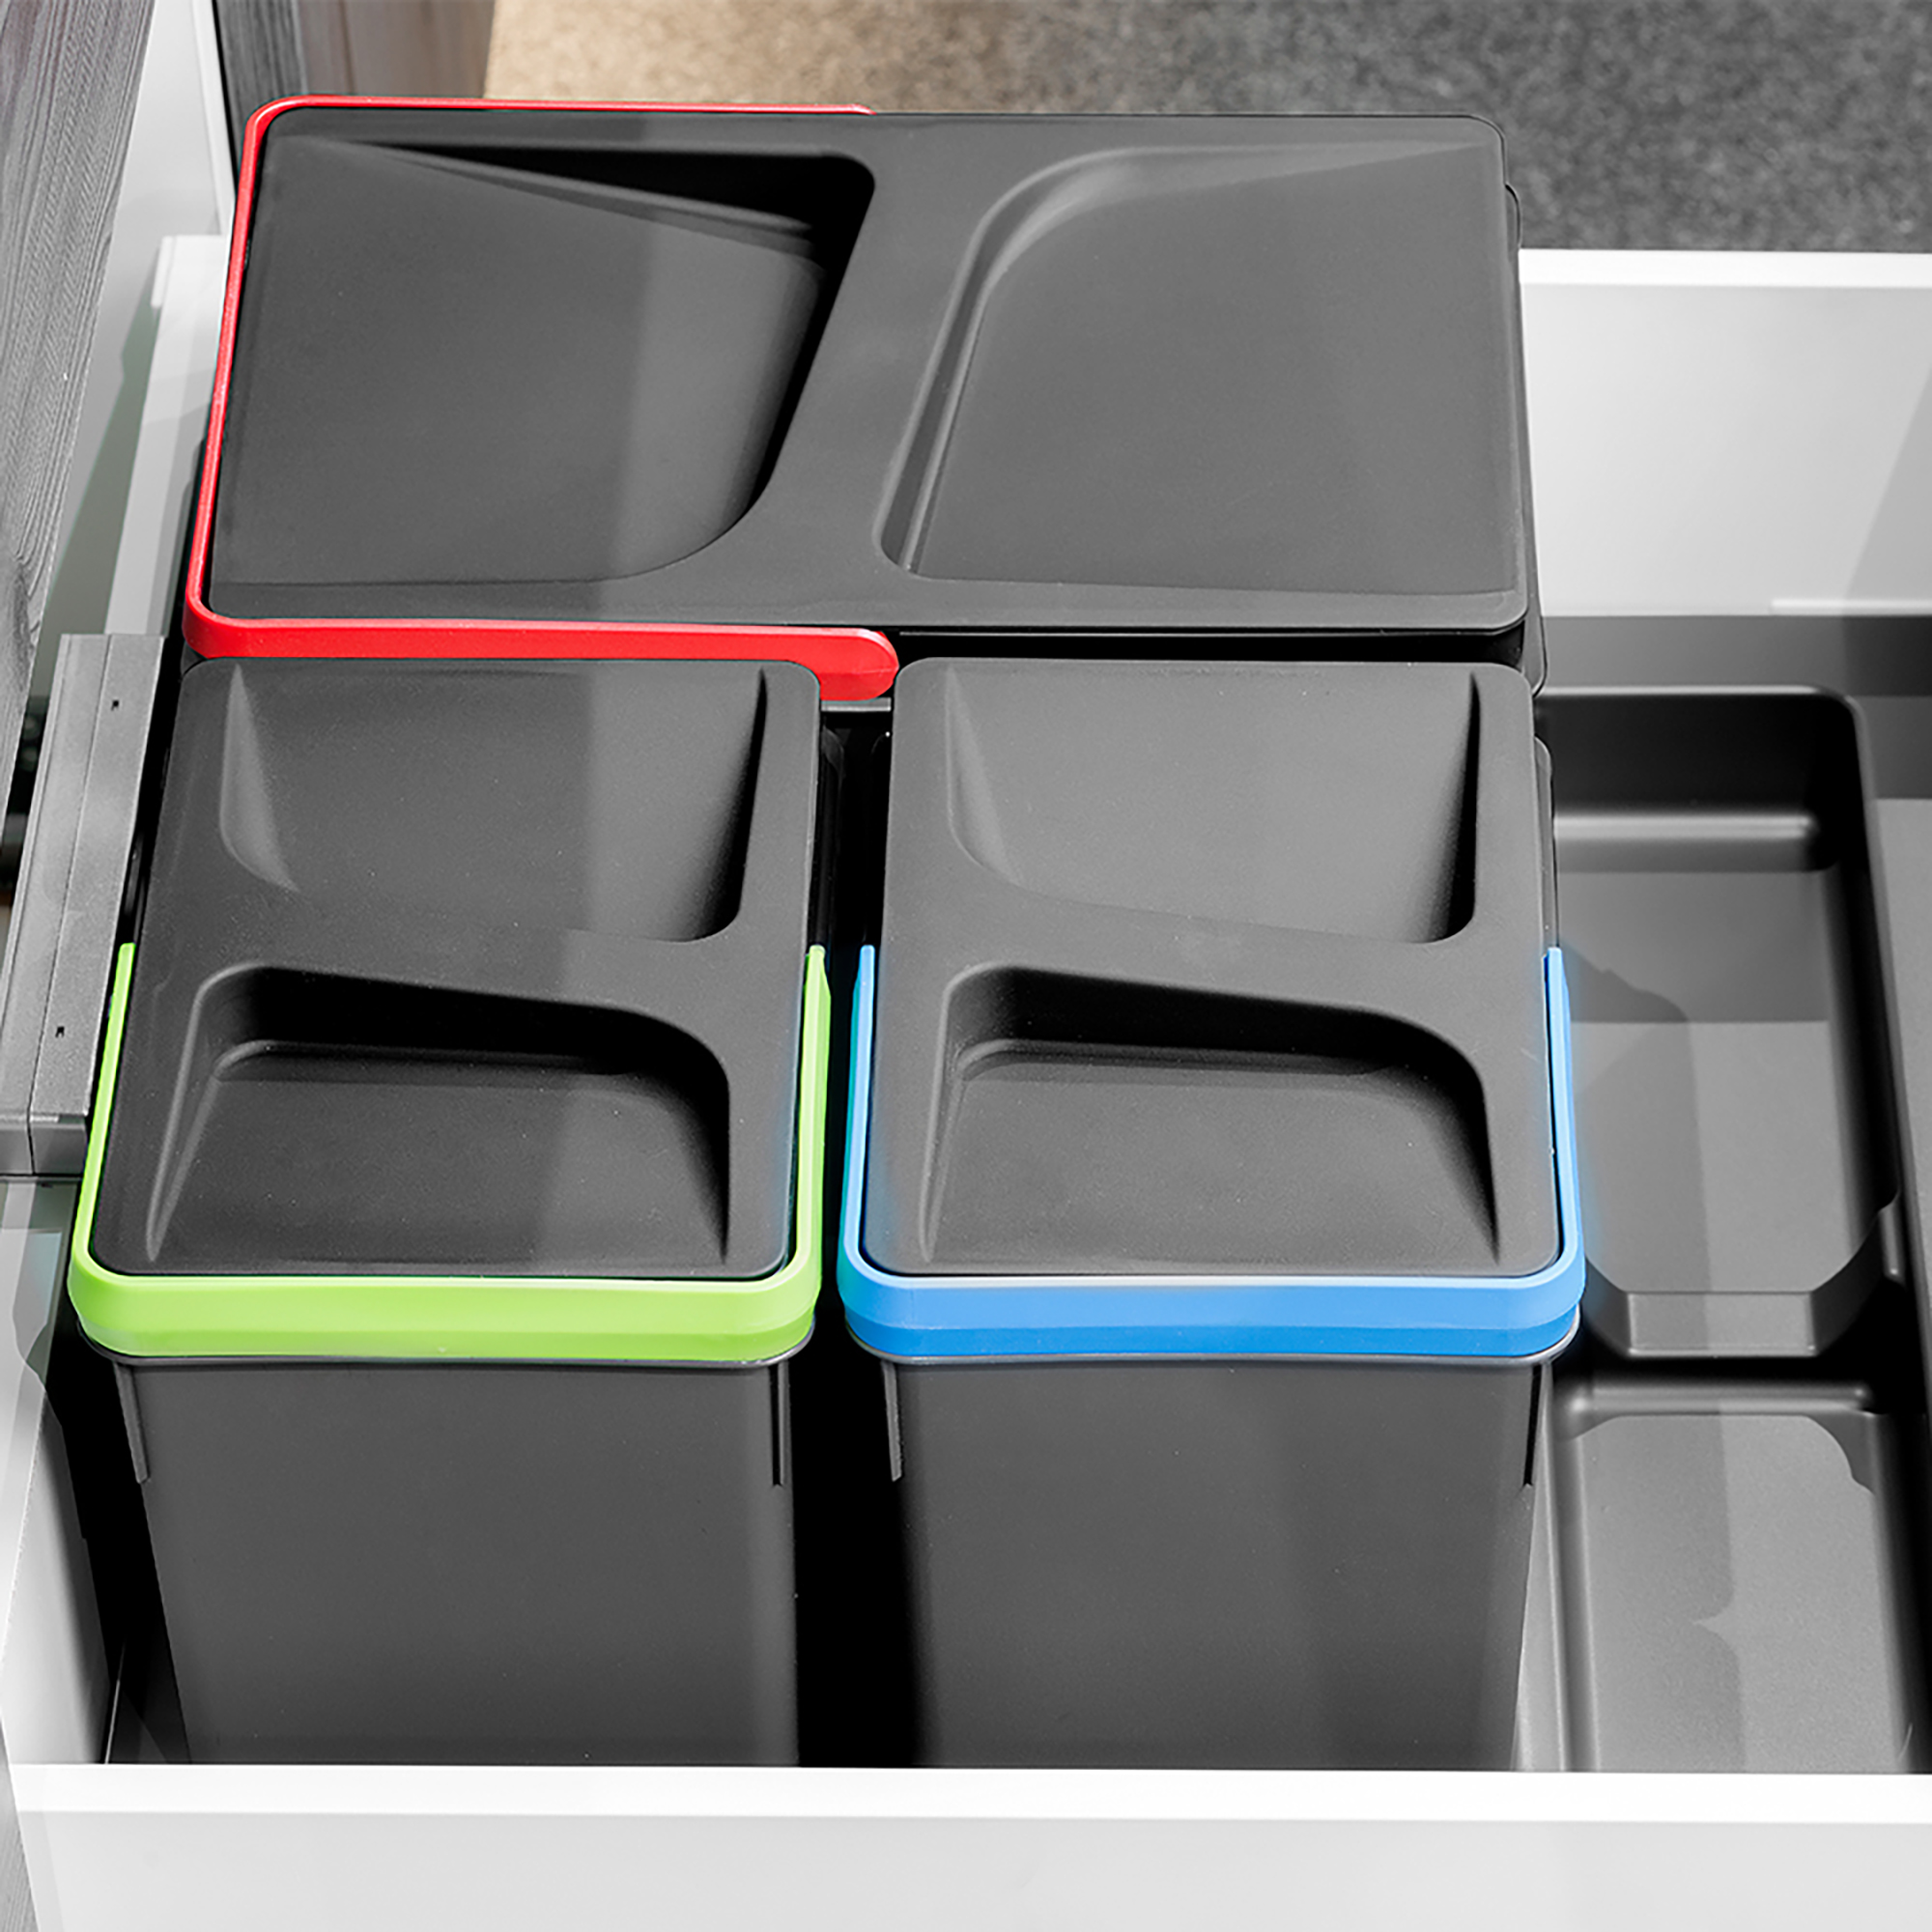  Poubelles pour tiroir de cuisine Recycle, Hauteur 216, 2x12 + 2x6, Plastique gris antracite, Plastique.